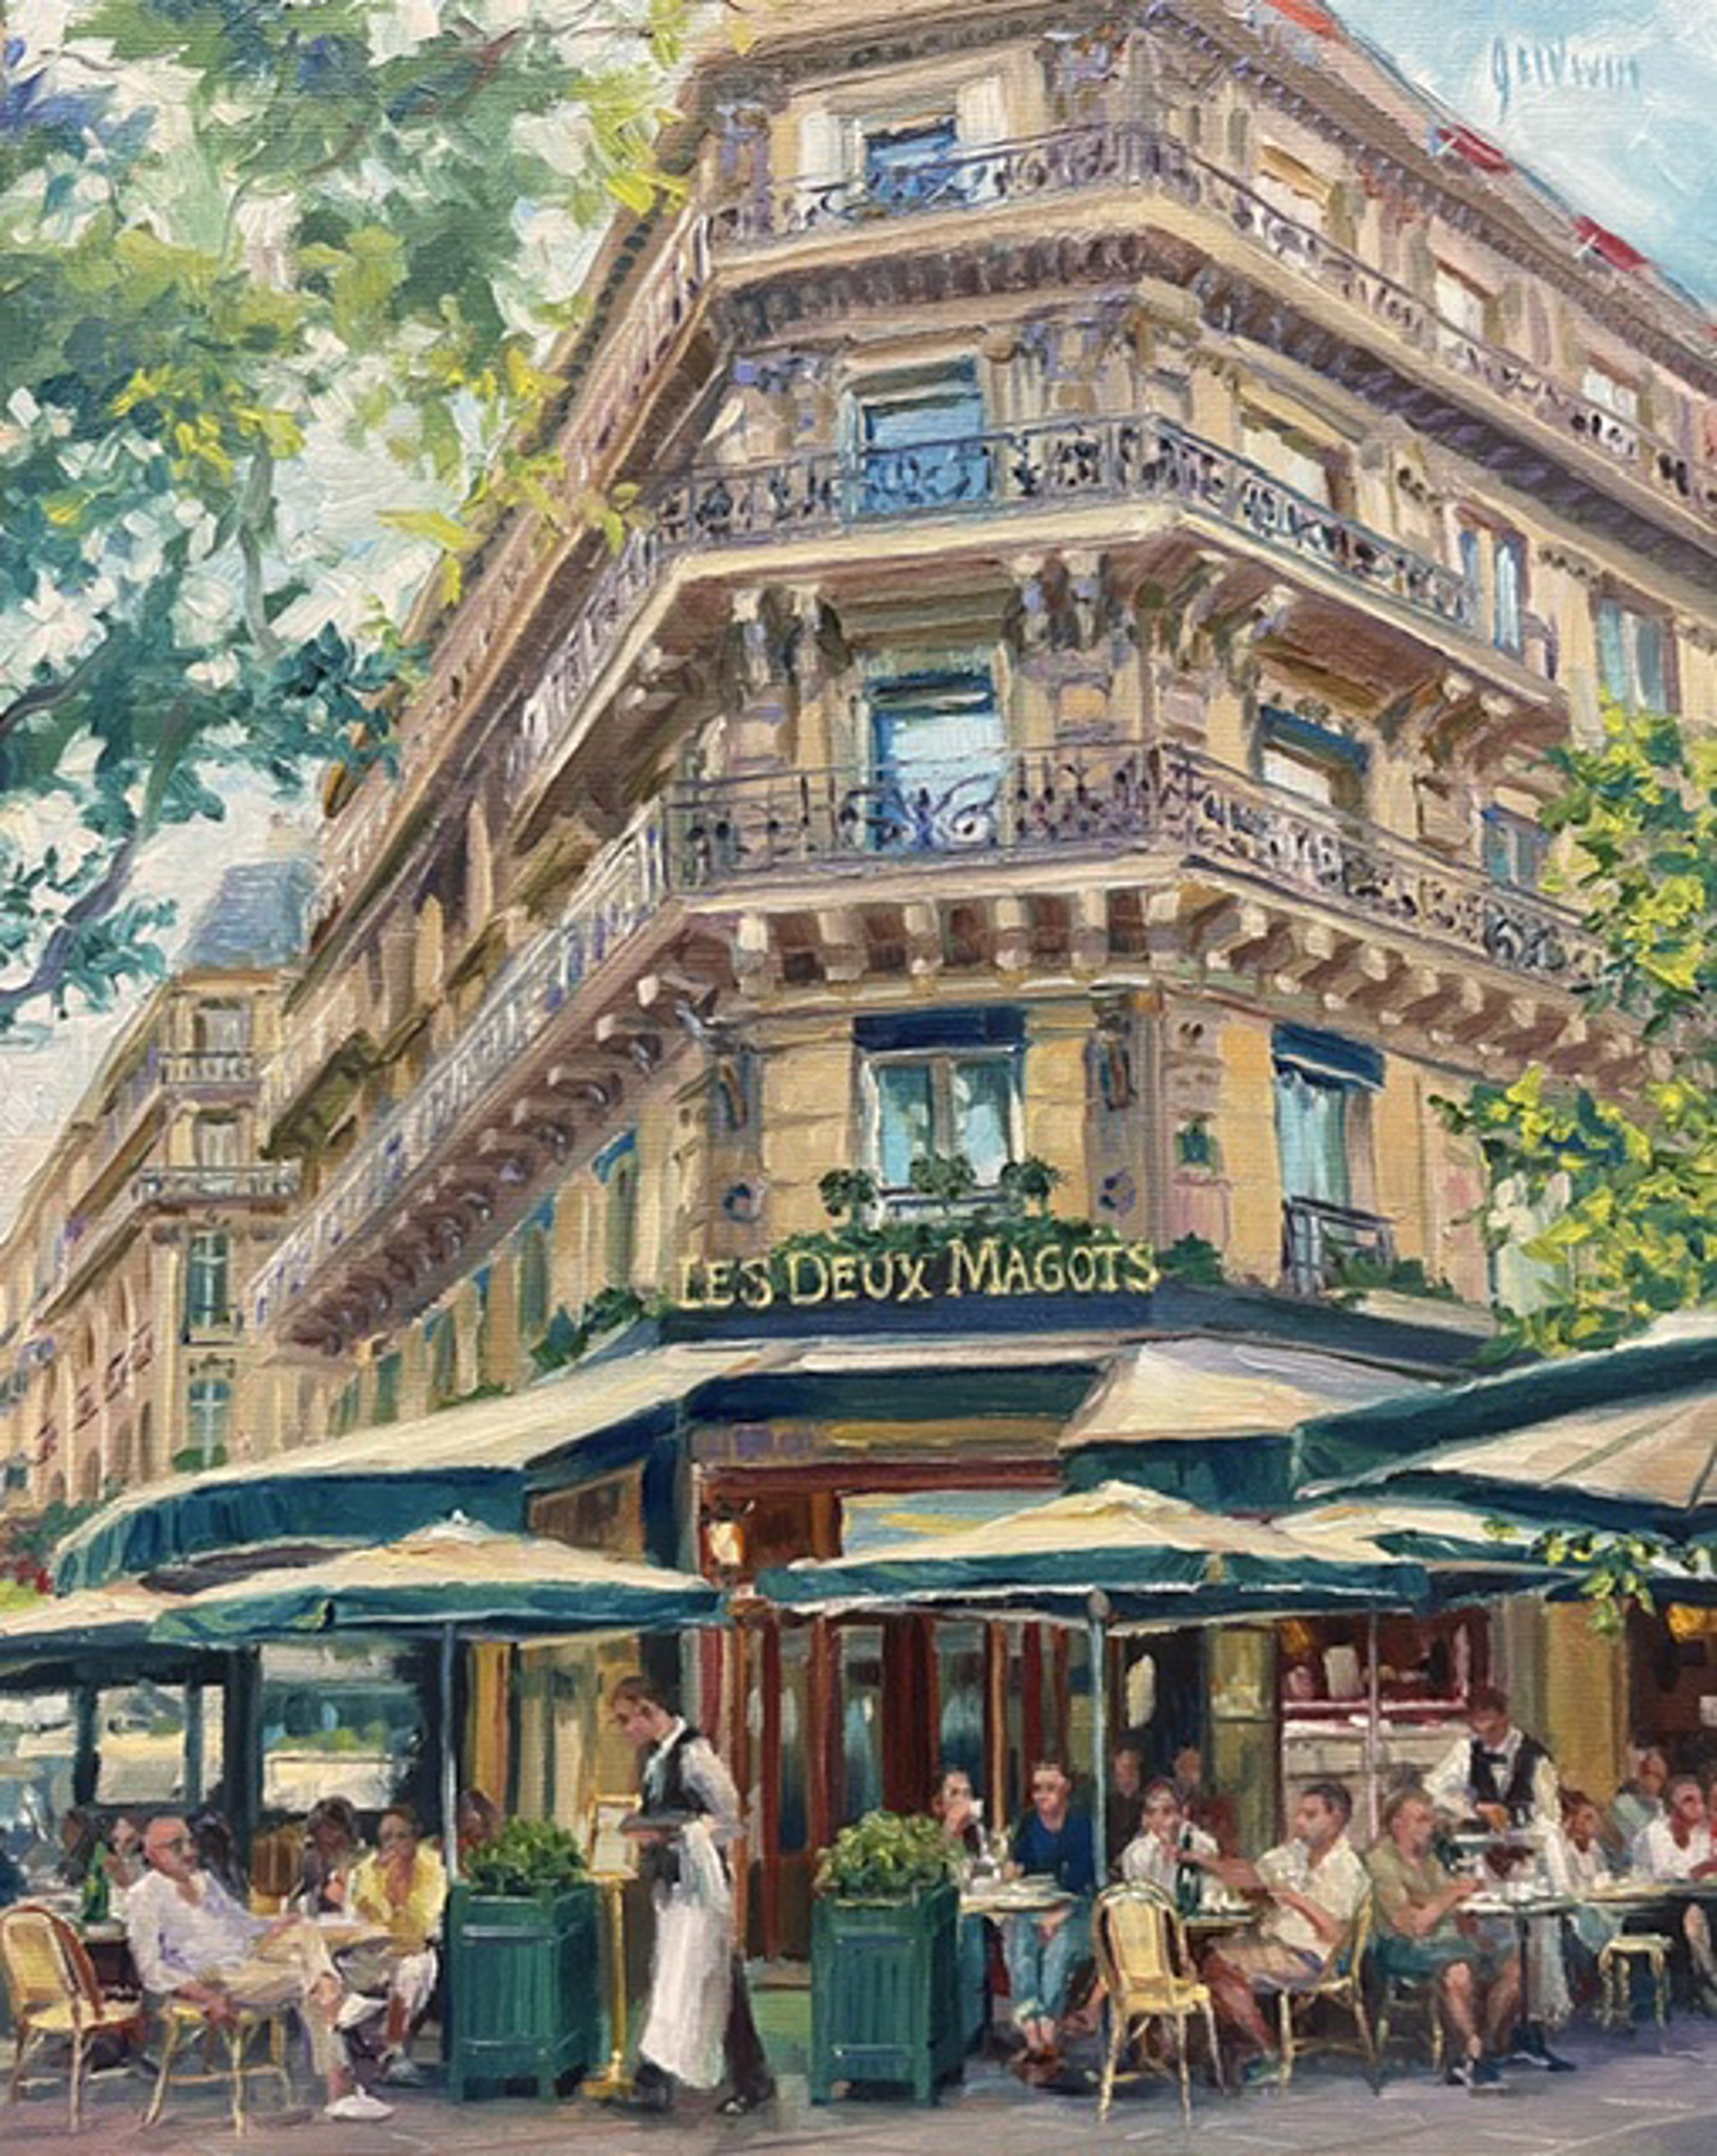 Les Deux Magots, Paris by Lindsay Goodwin